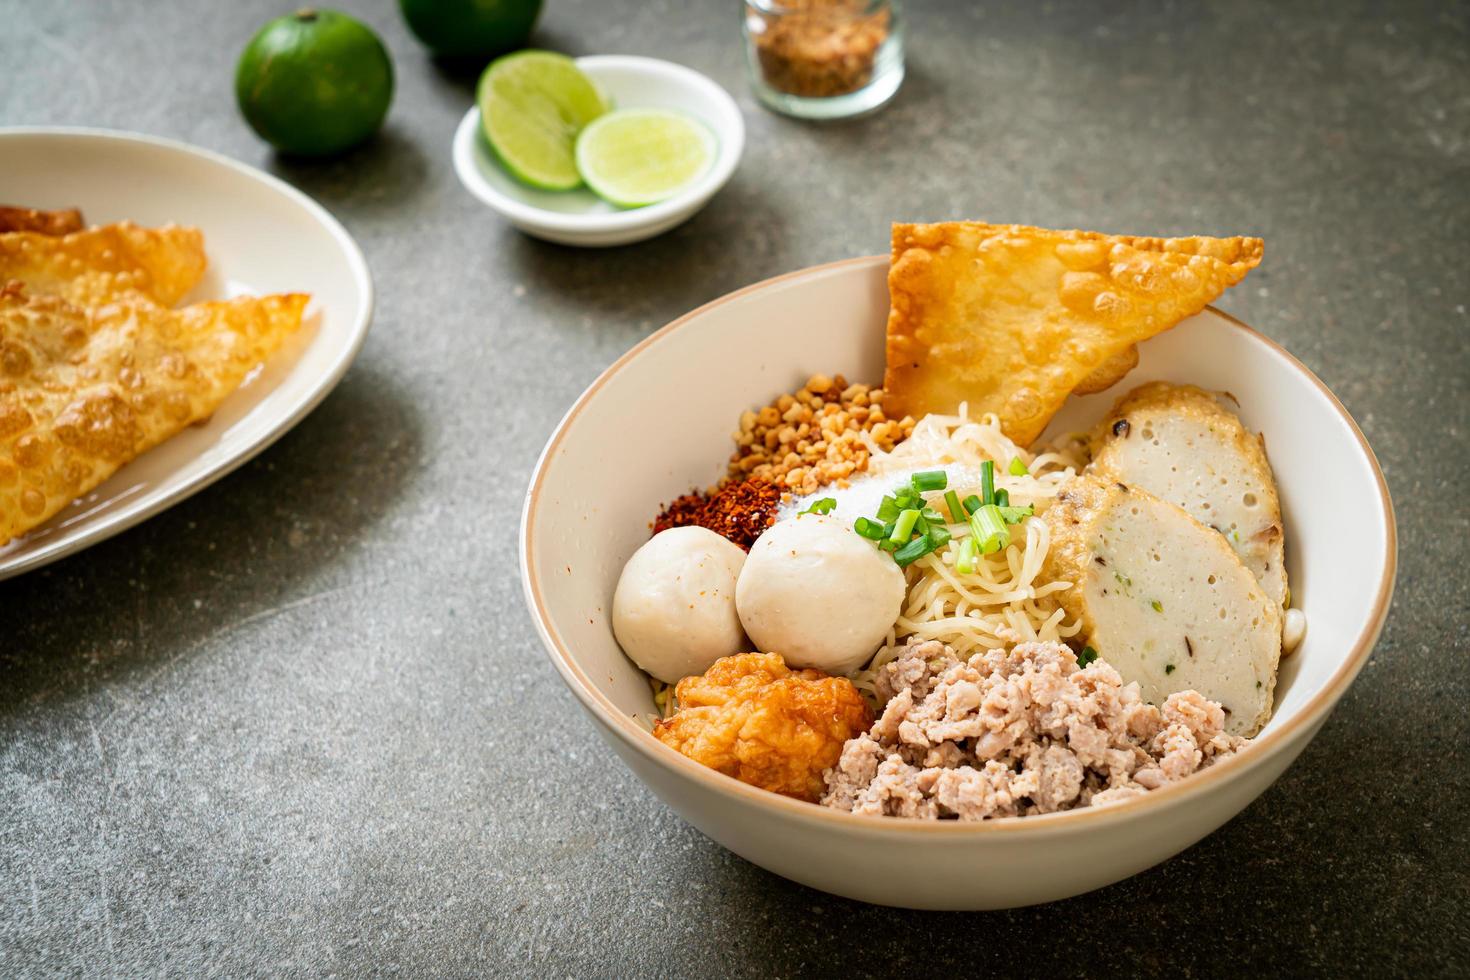 pittige eiernoedels met visballetjes en garnalenballetjes zonder soep - Aziatisch eten - foto